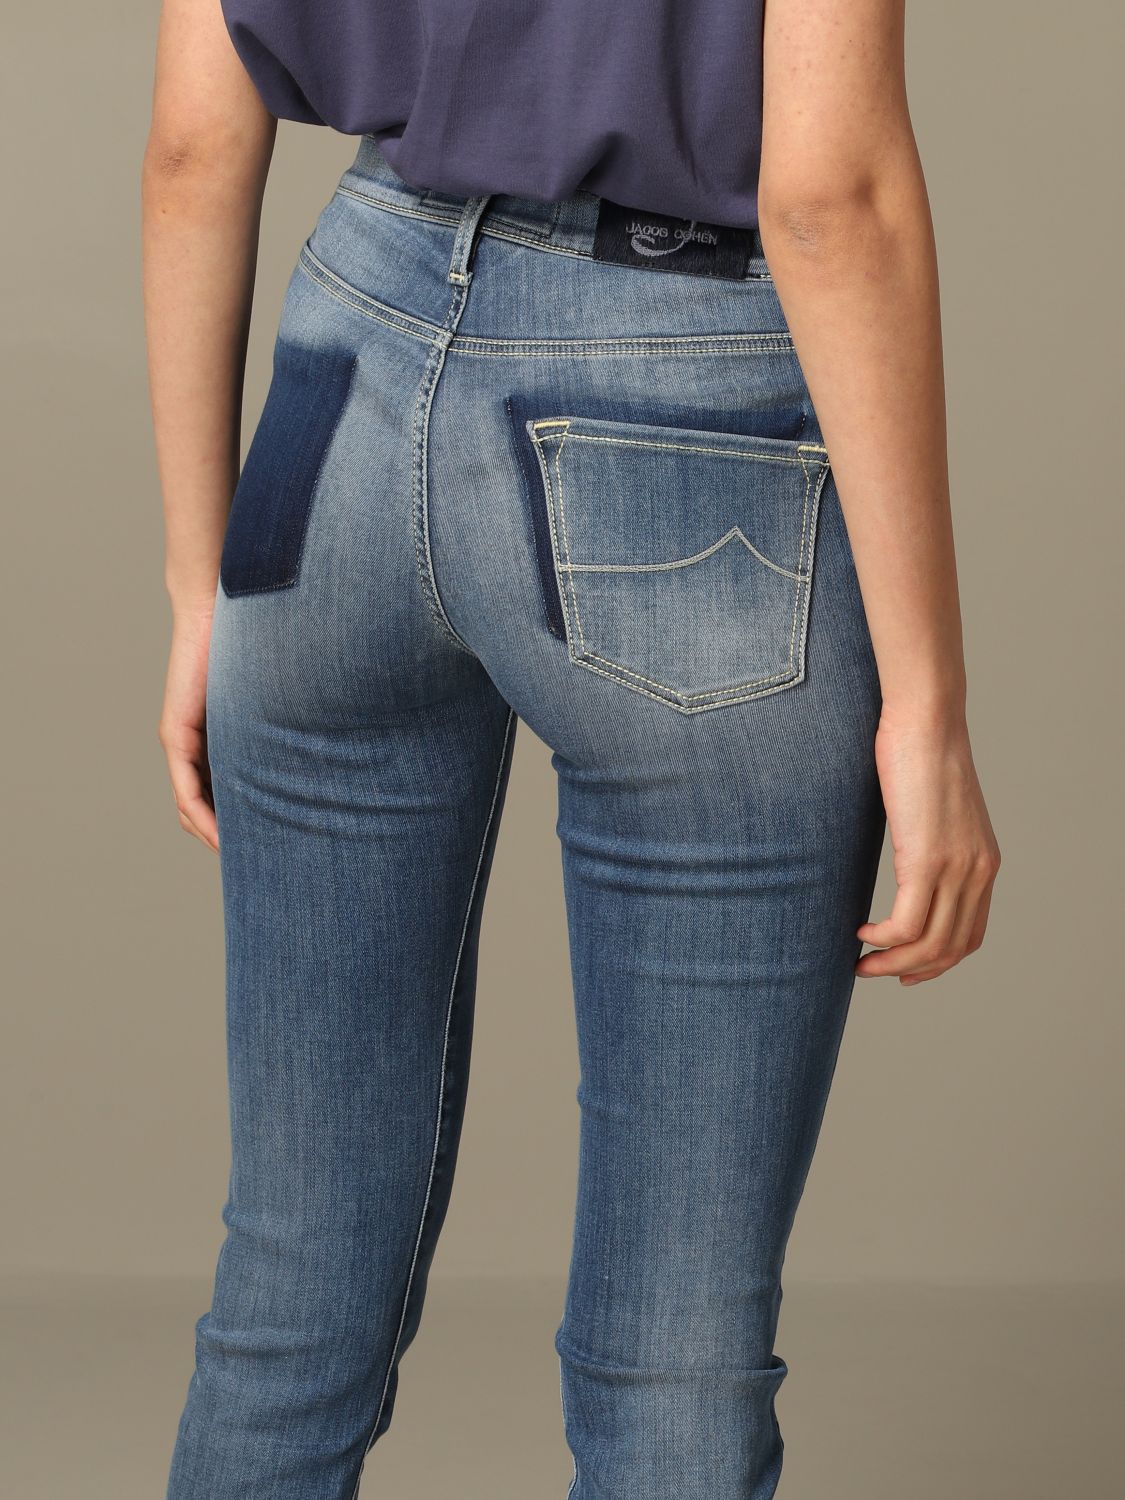 jacob cohen women's jeans